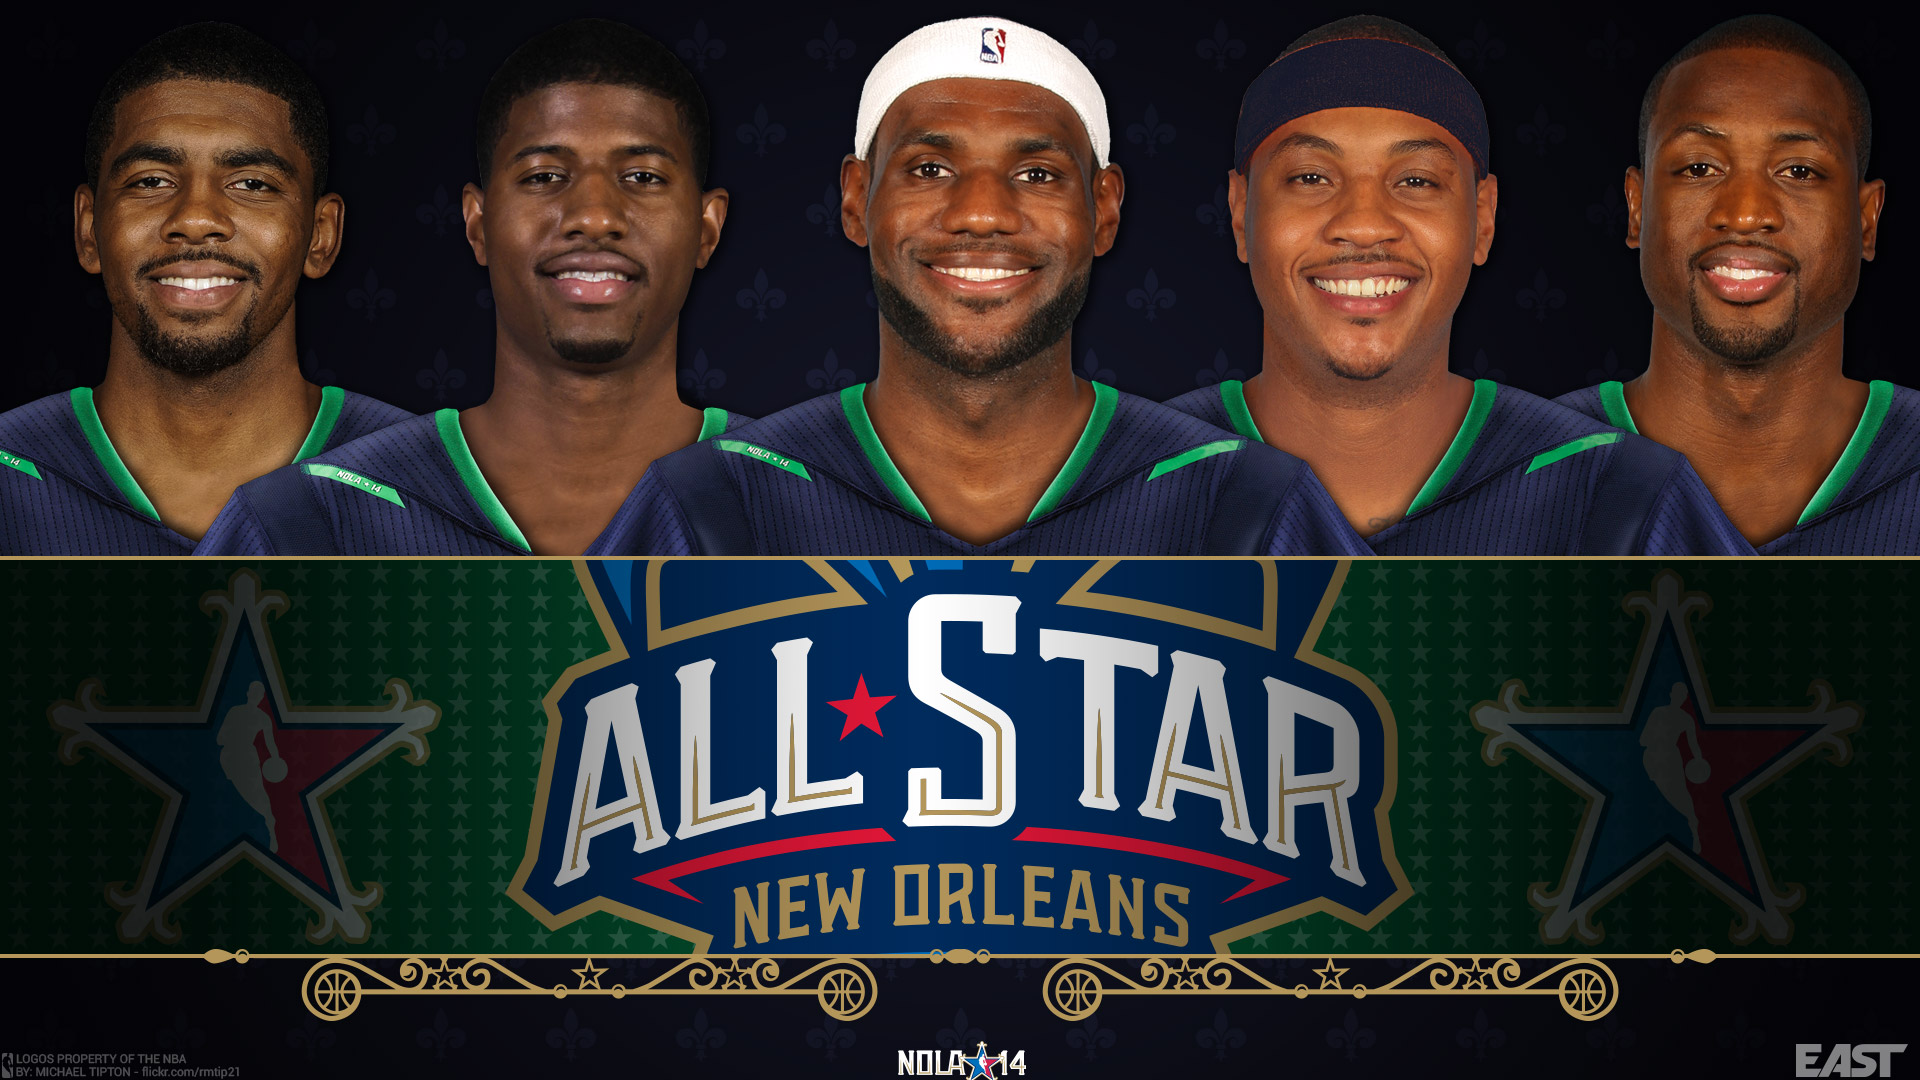 Nba All Star Wallpaper Basketball At